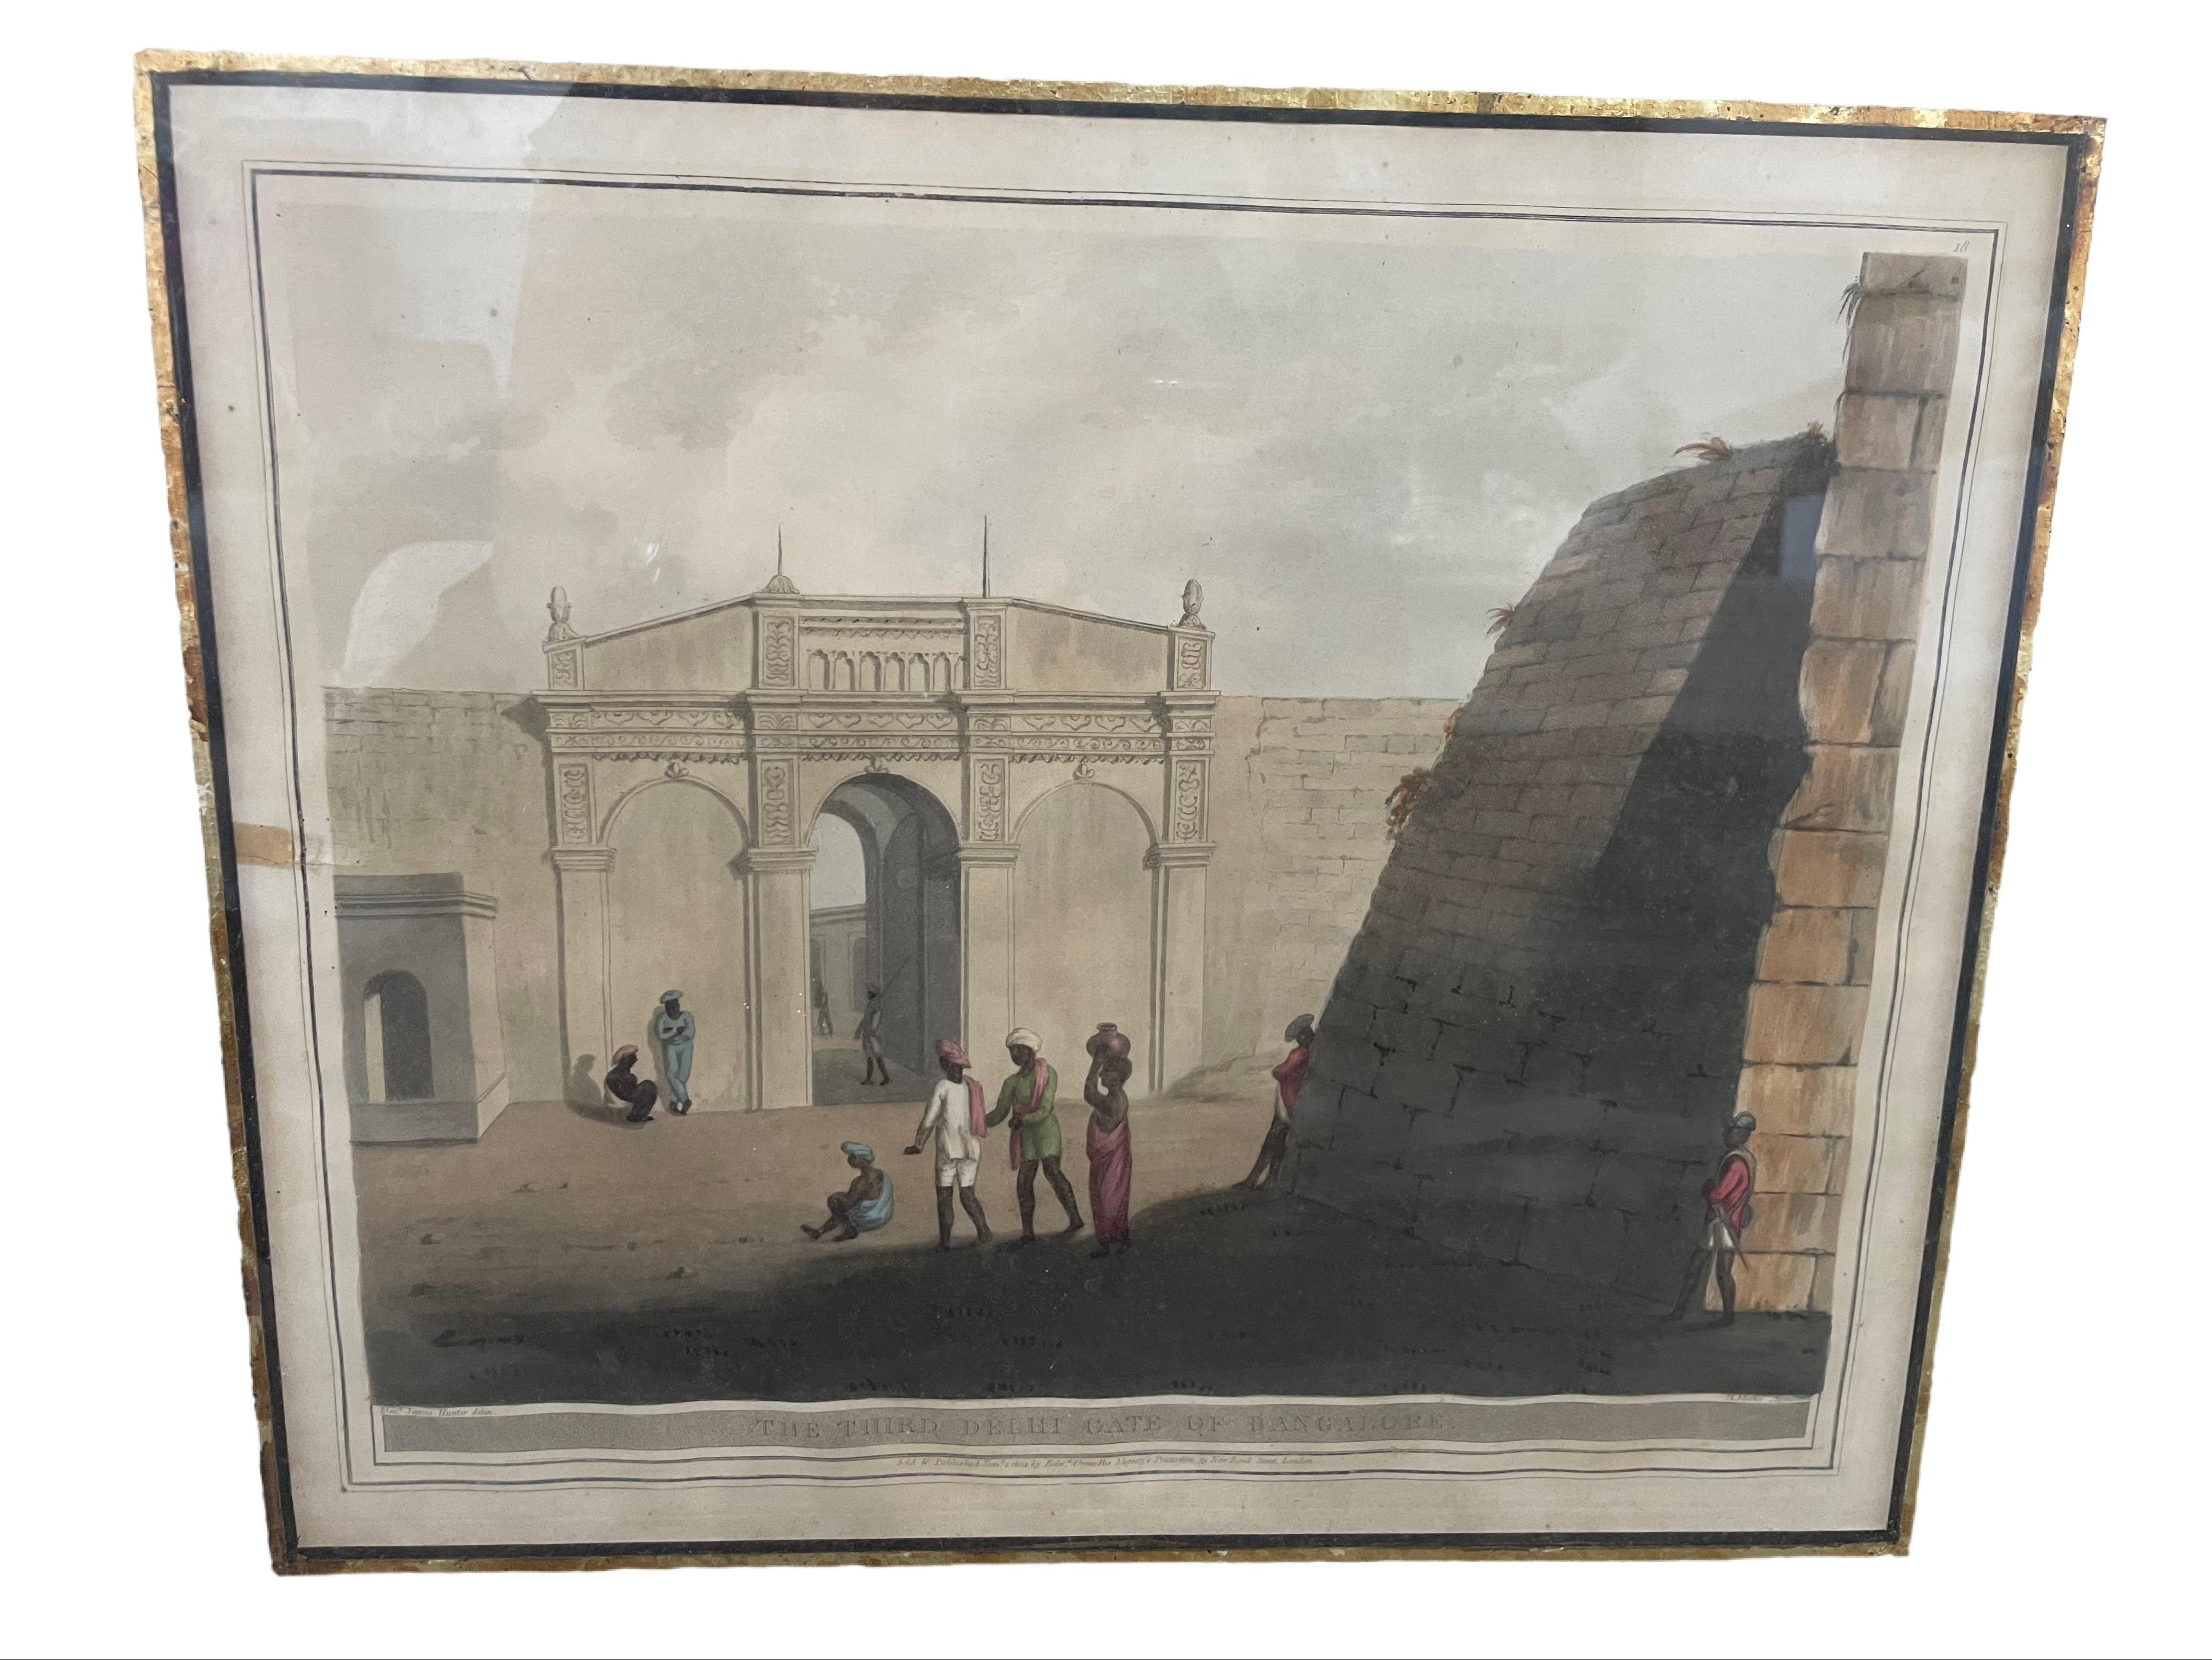 Ces estampes du milieu du XVIIIe siècle, peintes à l'origine par l'officier militaire et artiste britannique Lt. James Hunter pendant son service en Inde, représentent des images de paysages, de postes militaires et de résidences royales. Les